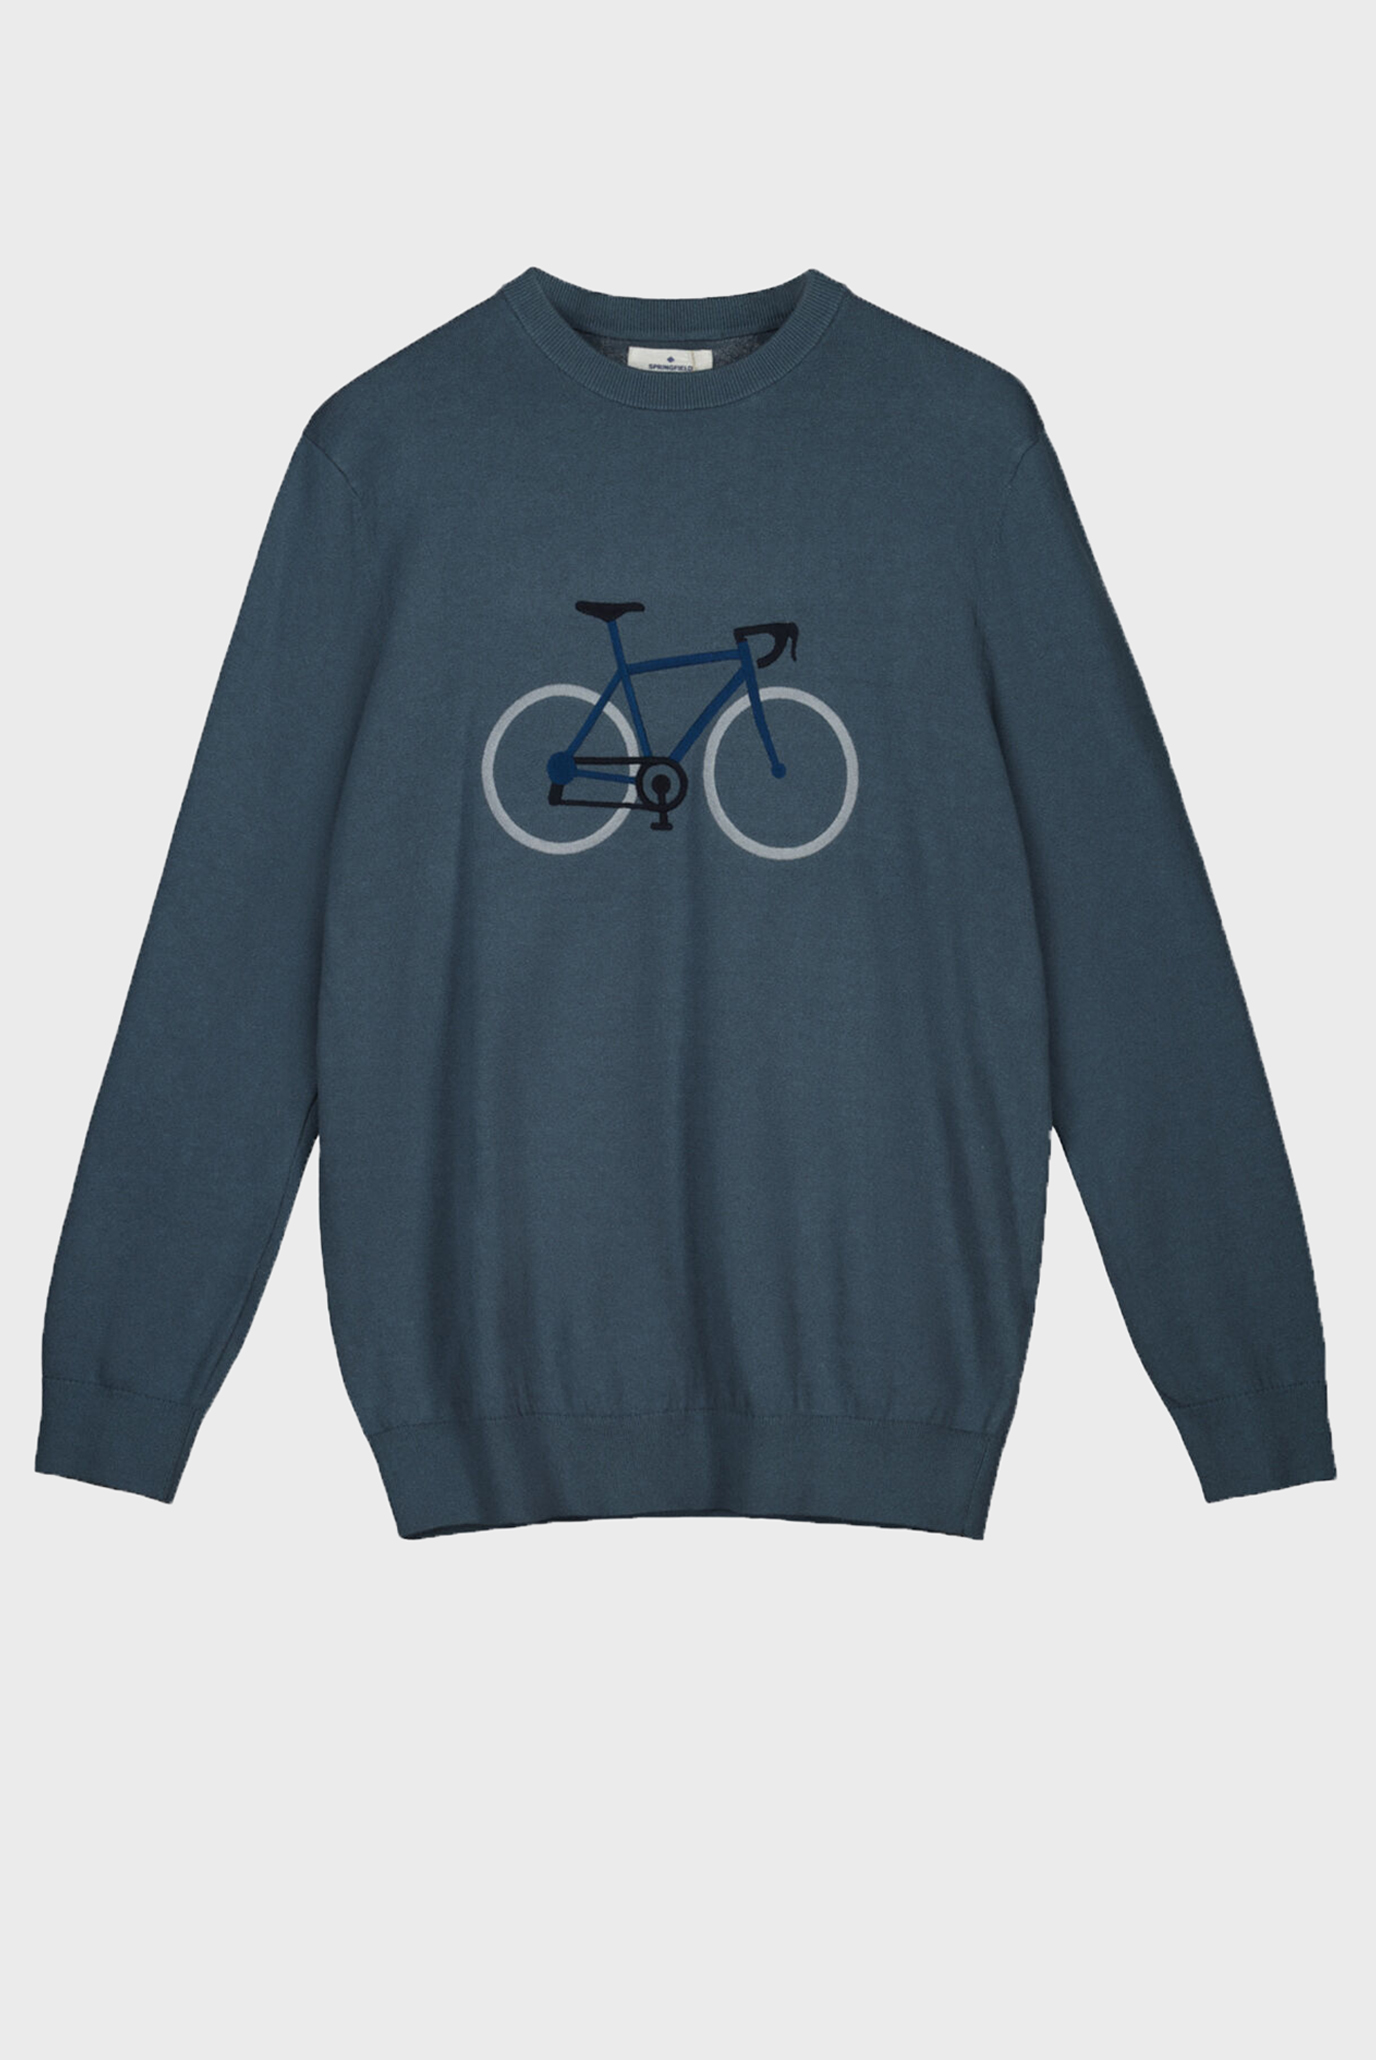 Чоловічий синій джемпер Bicycle 1